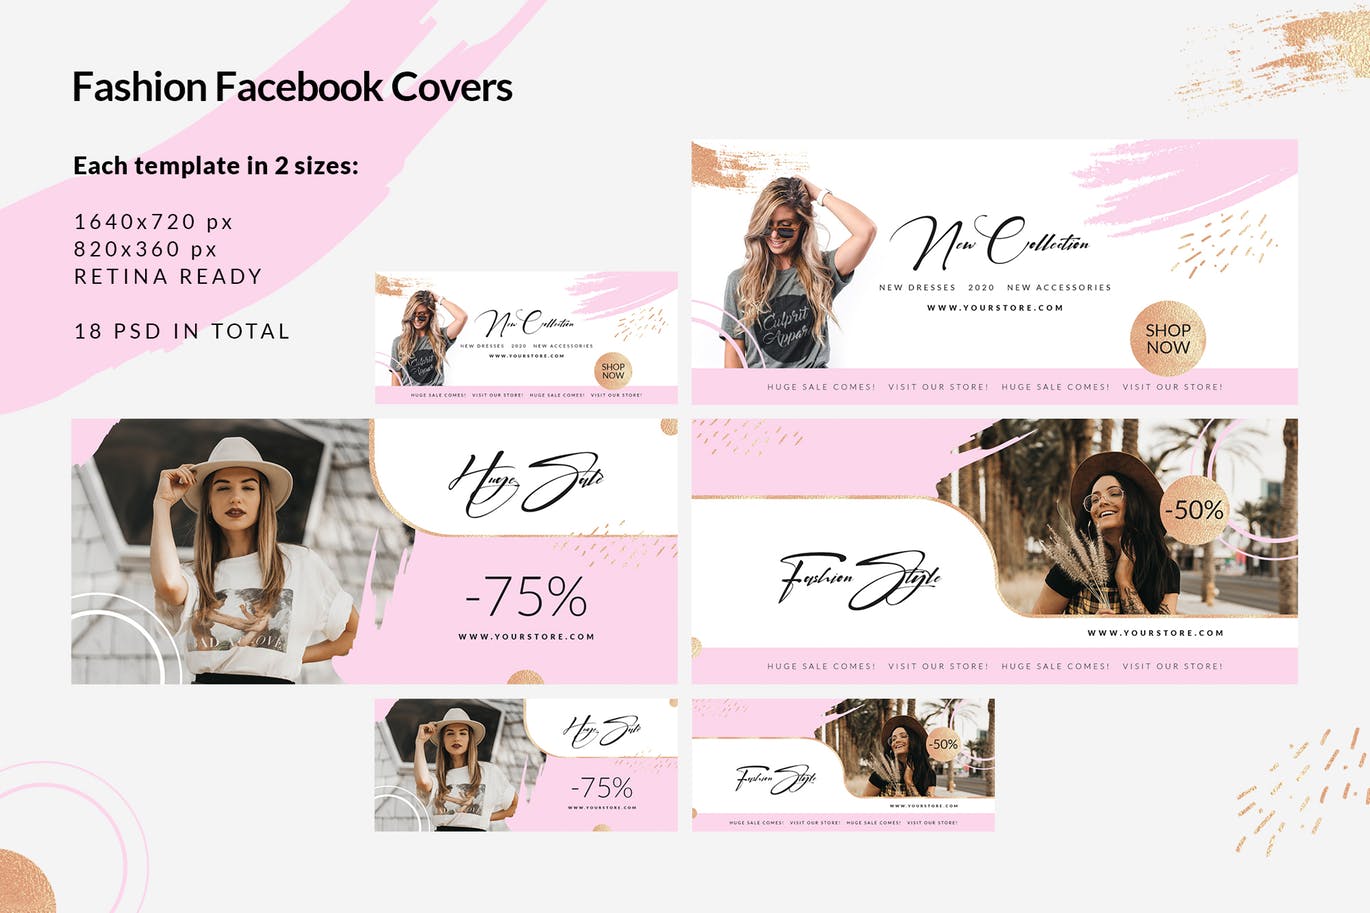 时尚品牌打折促销Facebook封面设计模板蚂蚁素材精选 Fashion Facebook Covers插图(2)